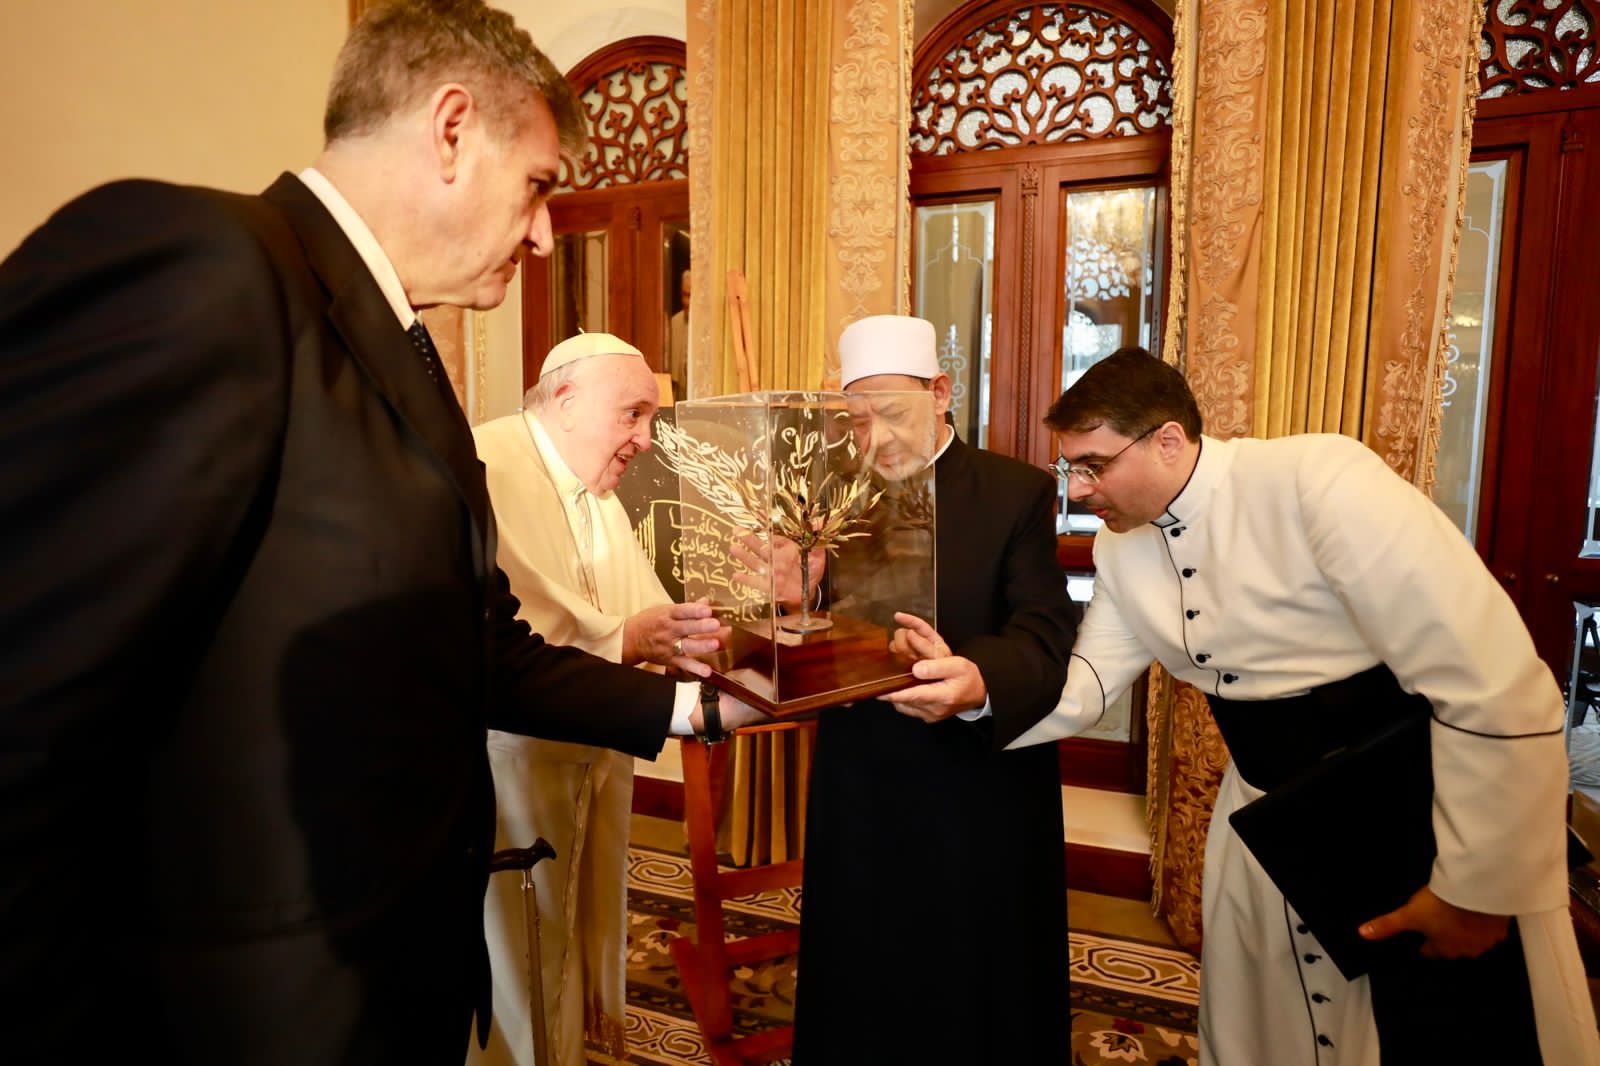 البابا فرنسيس يهدي الإمام الطيب مجسم شجرة الزيتون